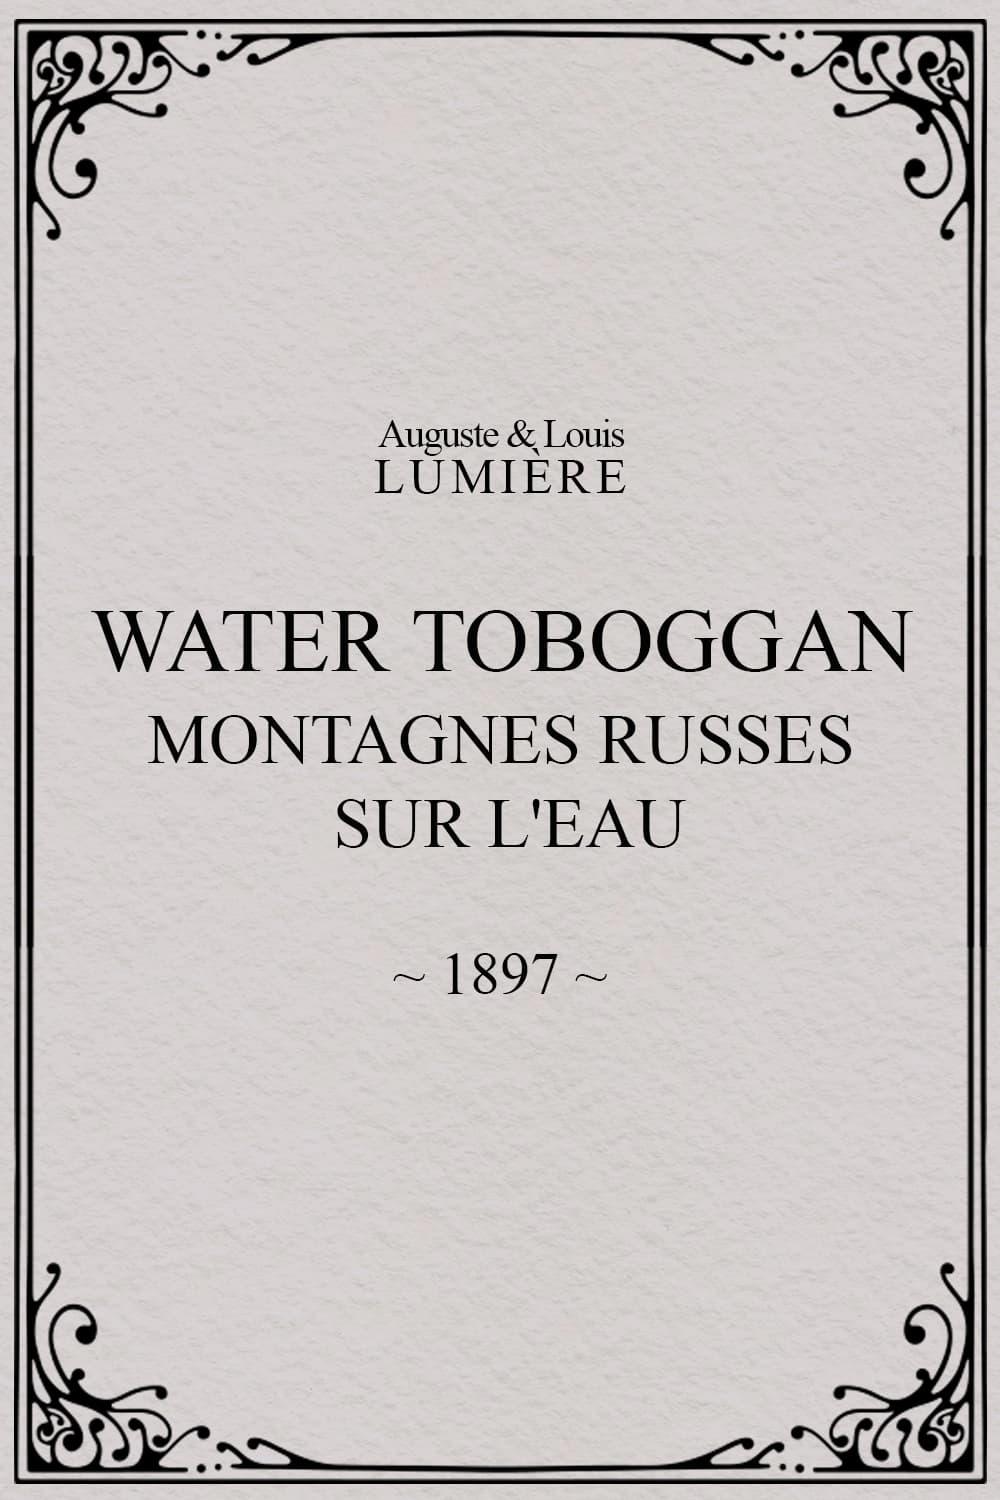 Water toboggan (Montagnes russes sur l'eau) poster